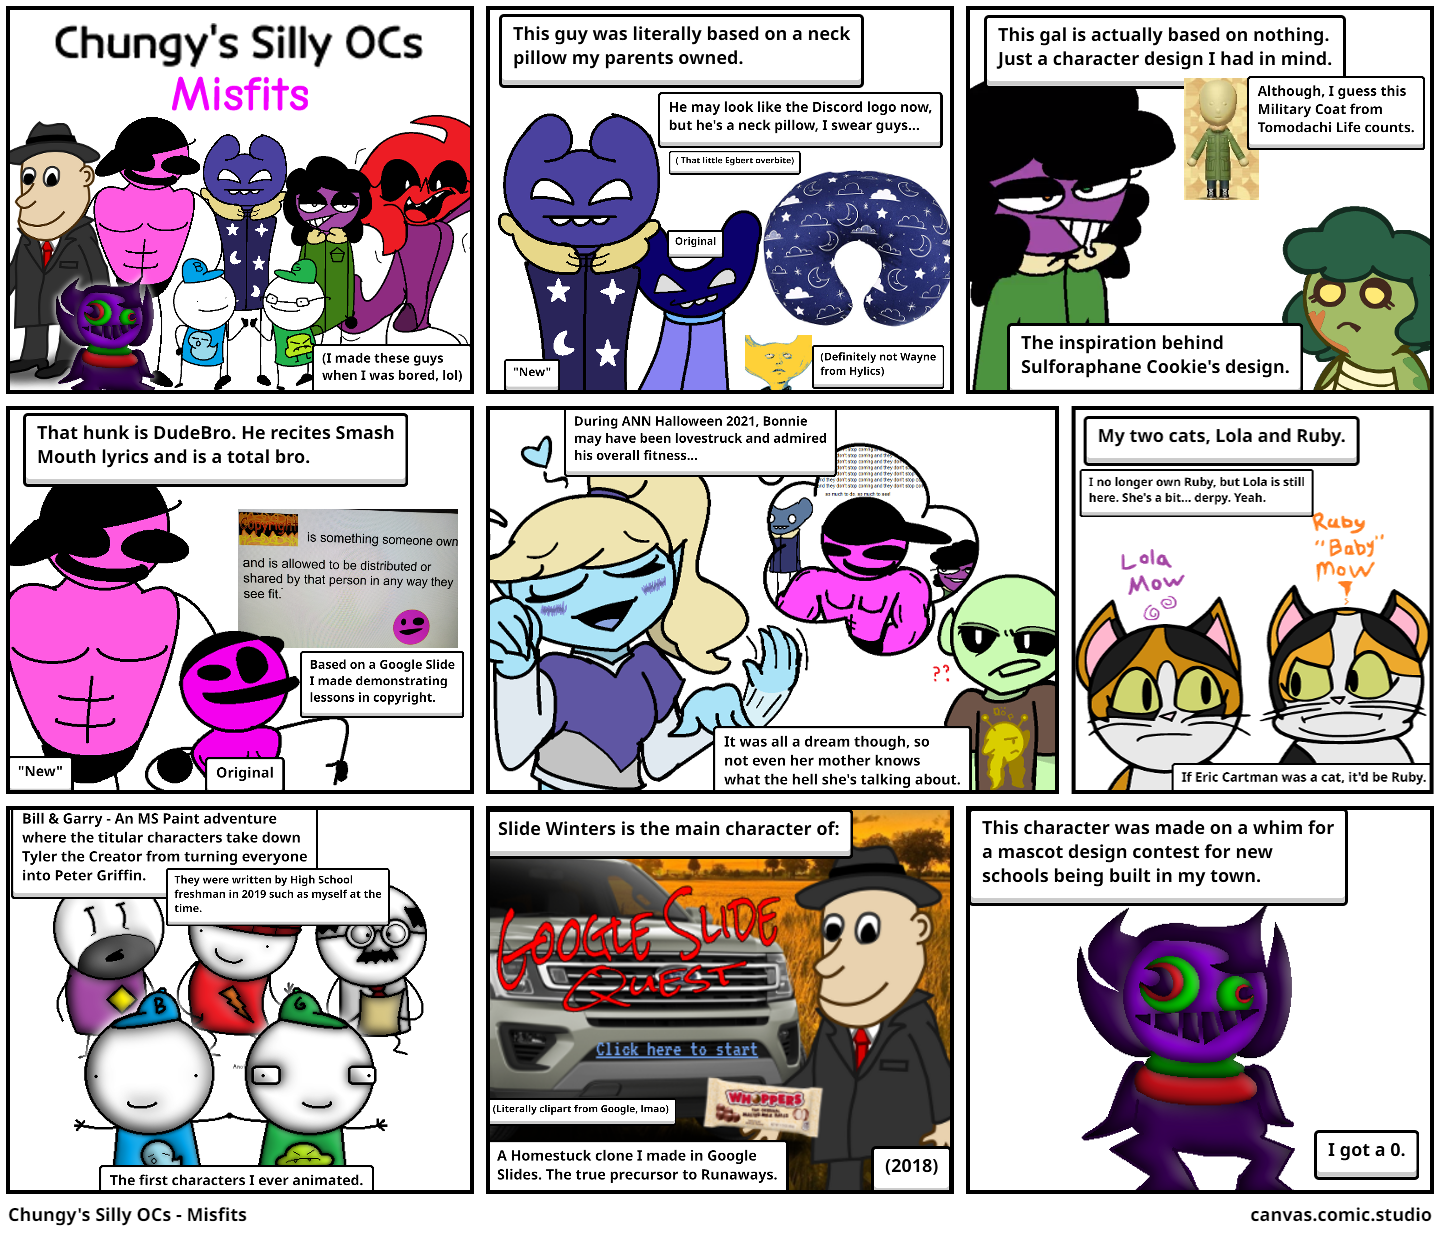 Chungy's Silly OCs - Misfits